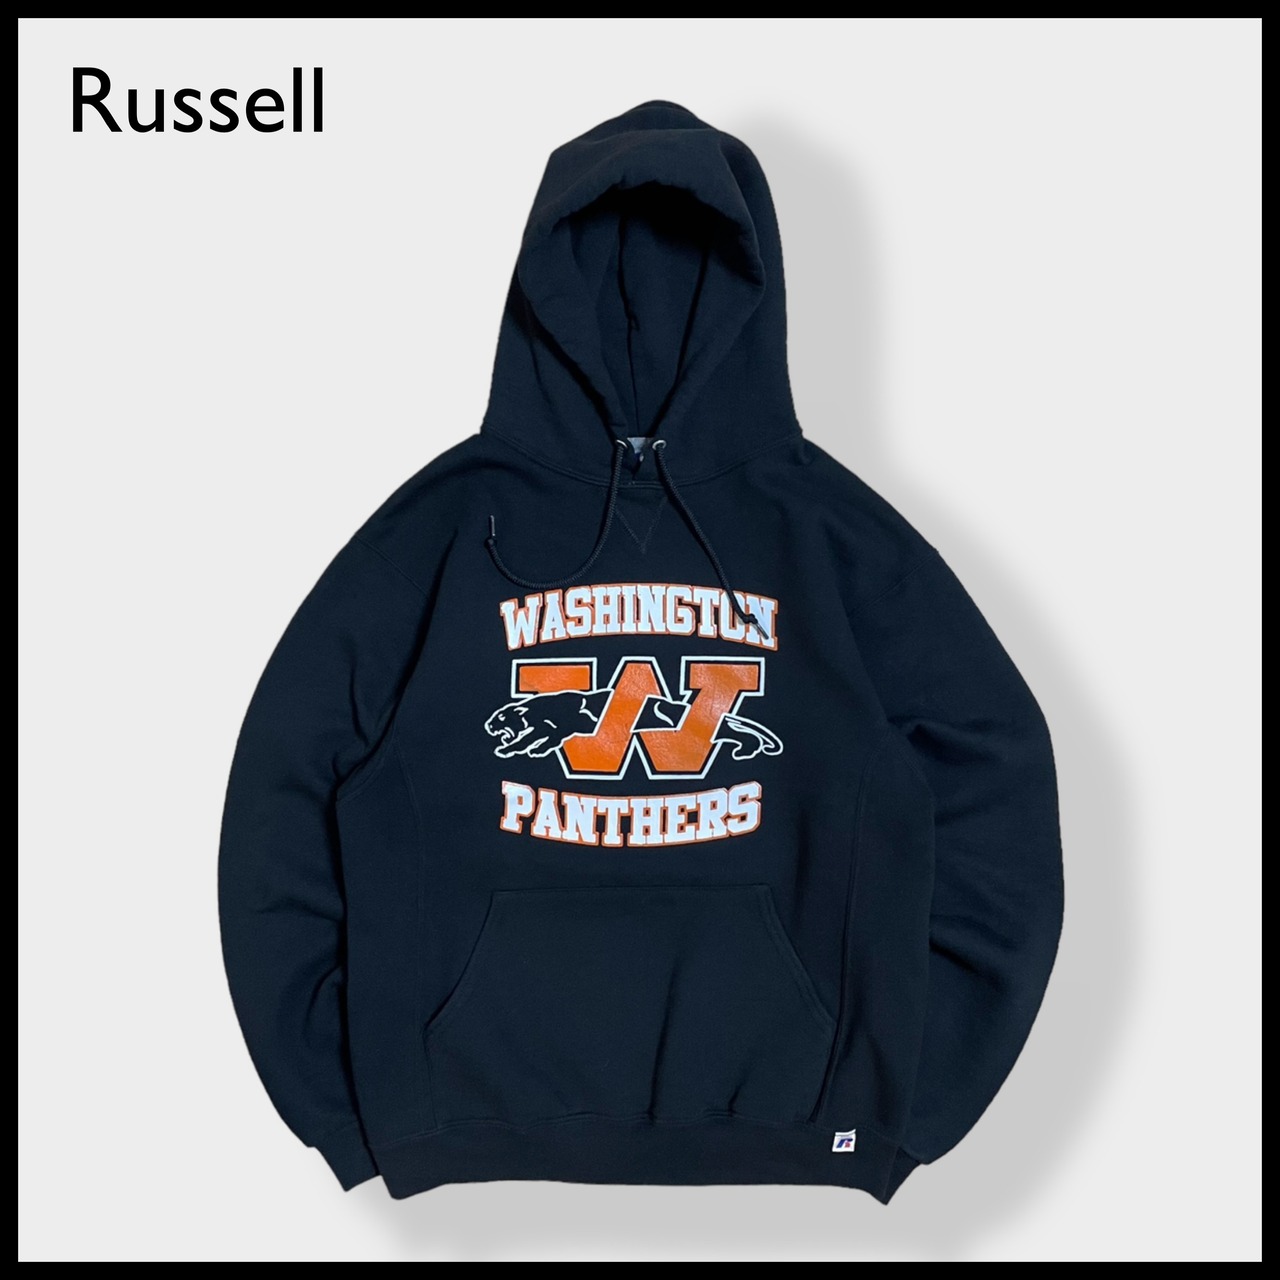 【Russell】ワシントンコミュニティ高校 パンサーズ WASHINGTON PANTHERS ロゴ プリント パーカー スウェット フーディー hoodie M ブラック us古着